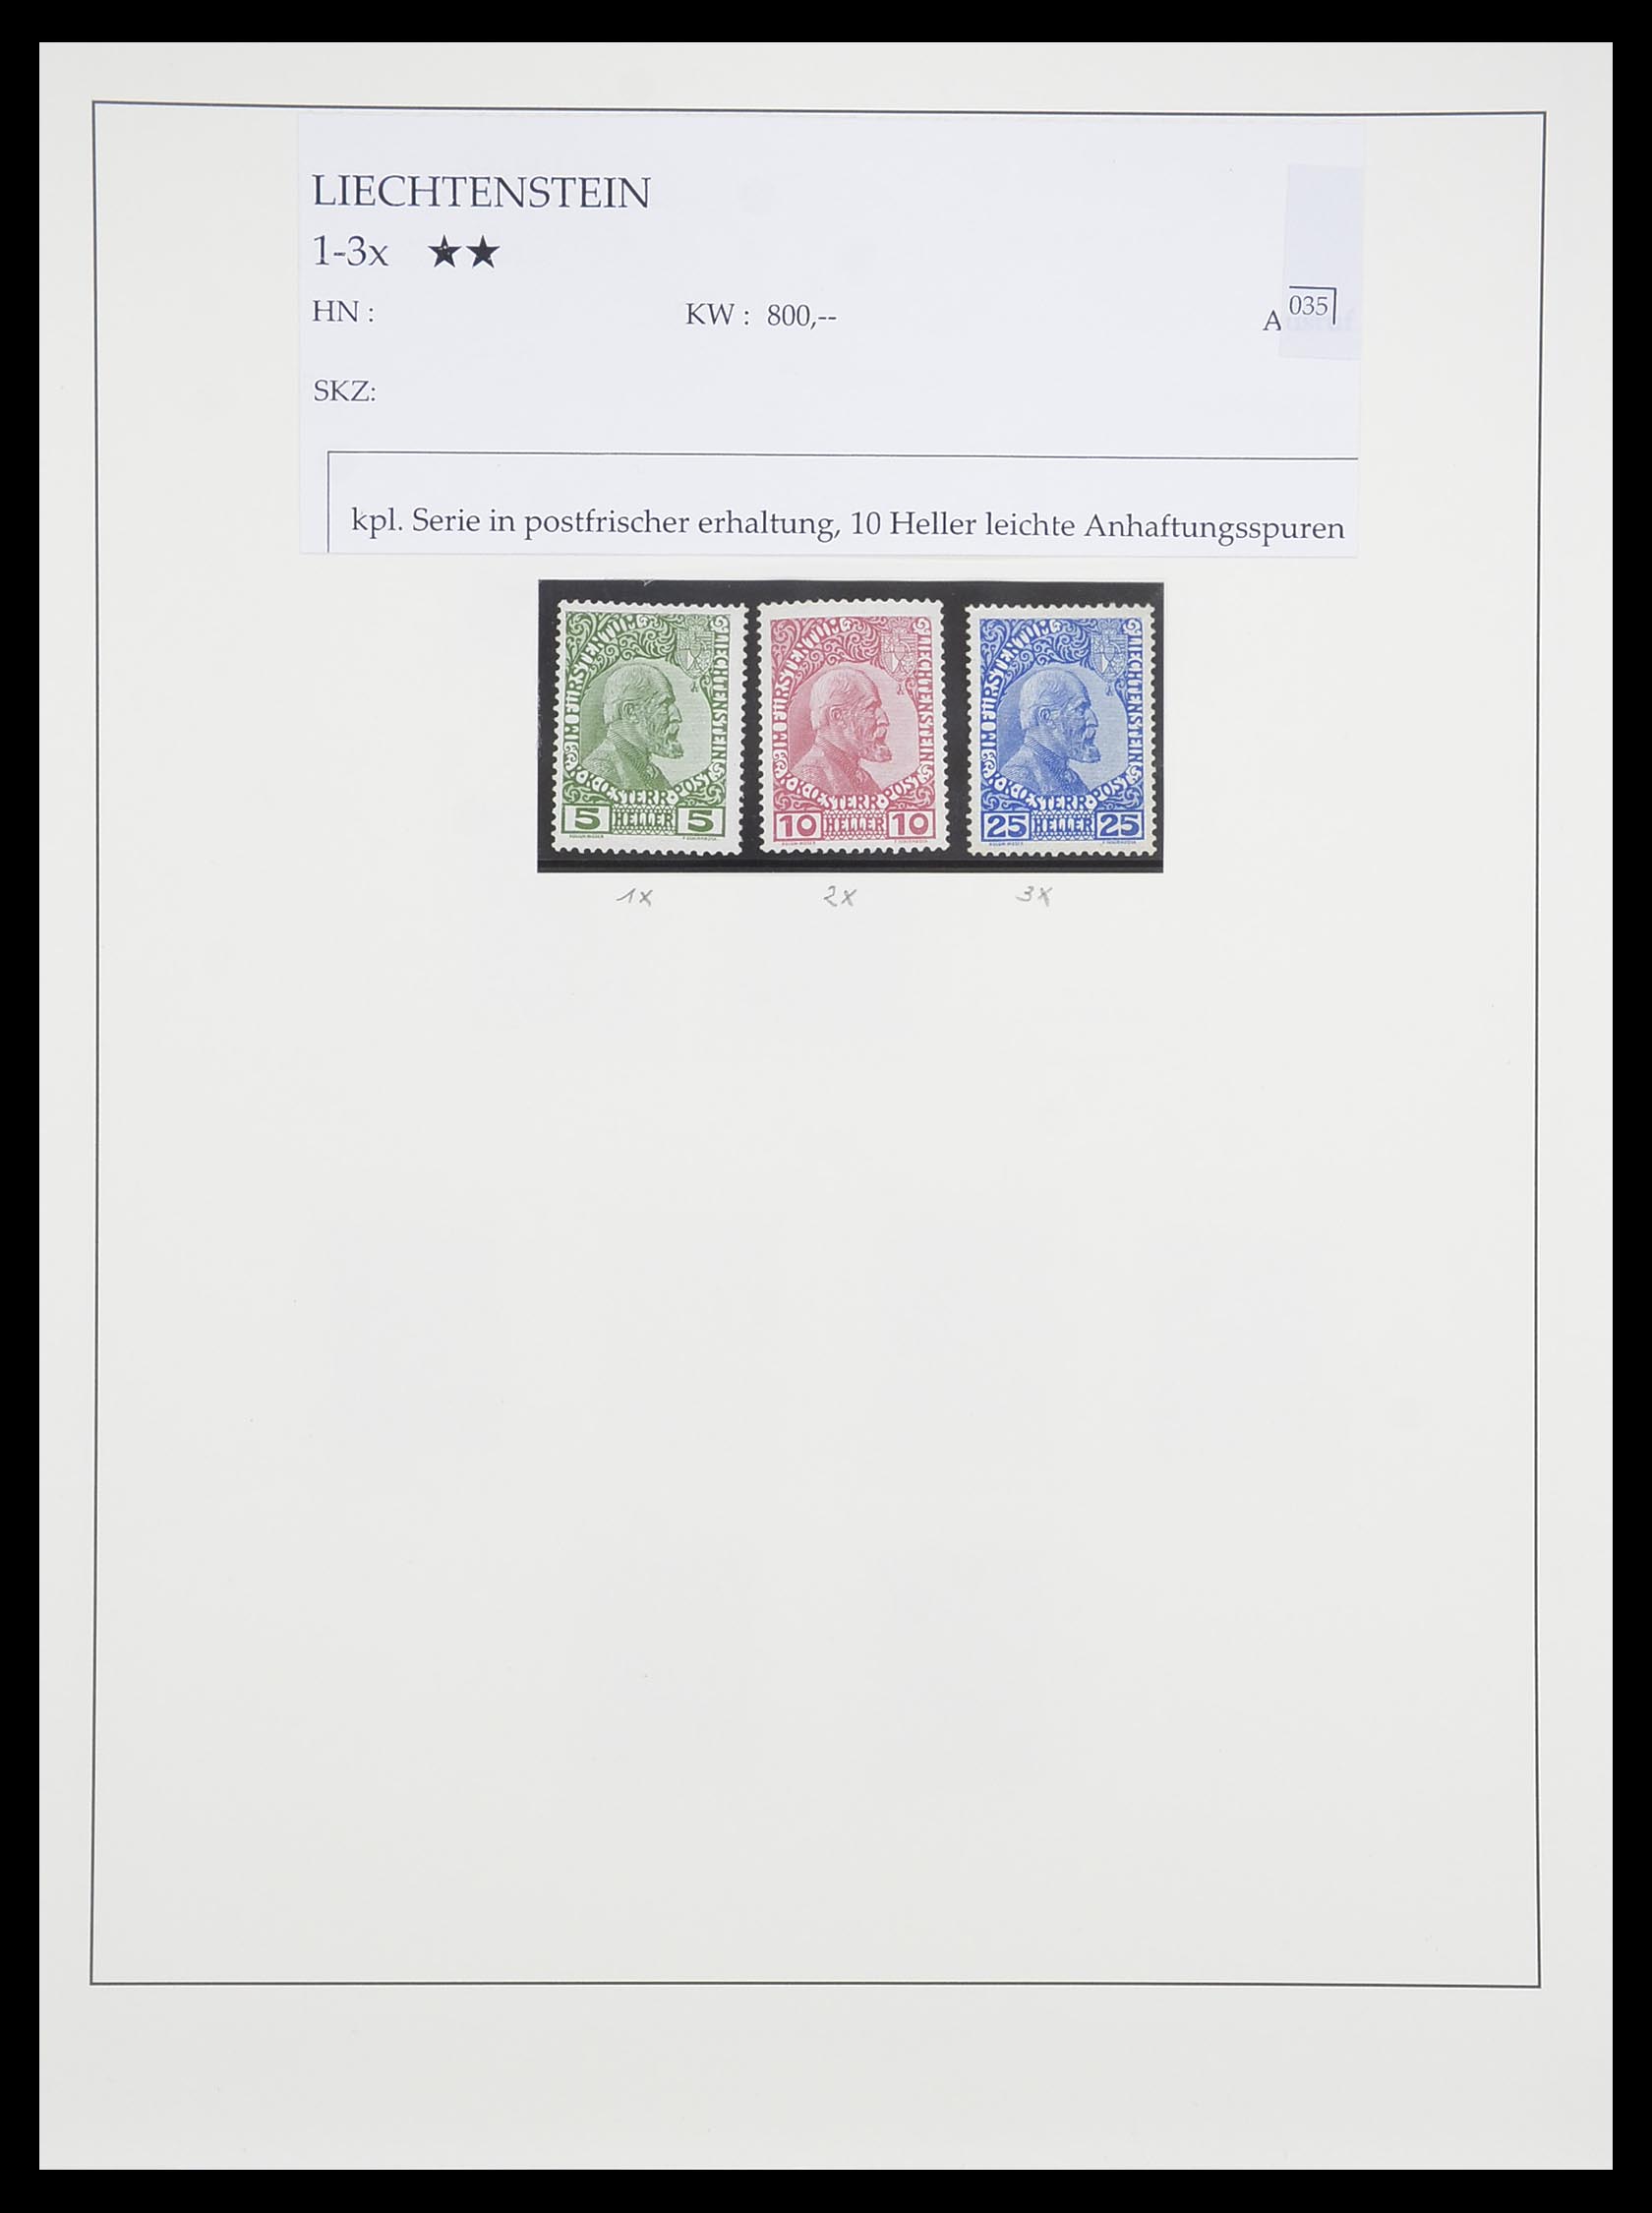 33493 001 - Stamp collection 33493 Liechtenstein 1912-2008.